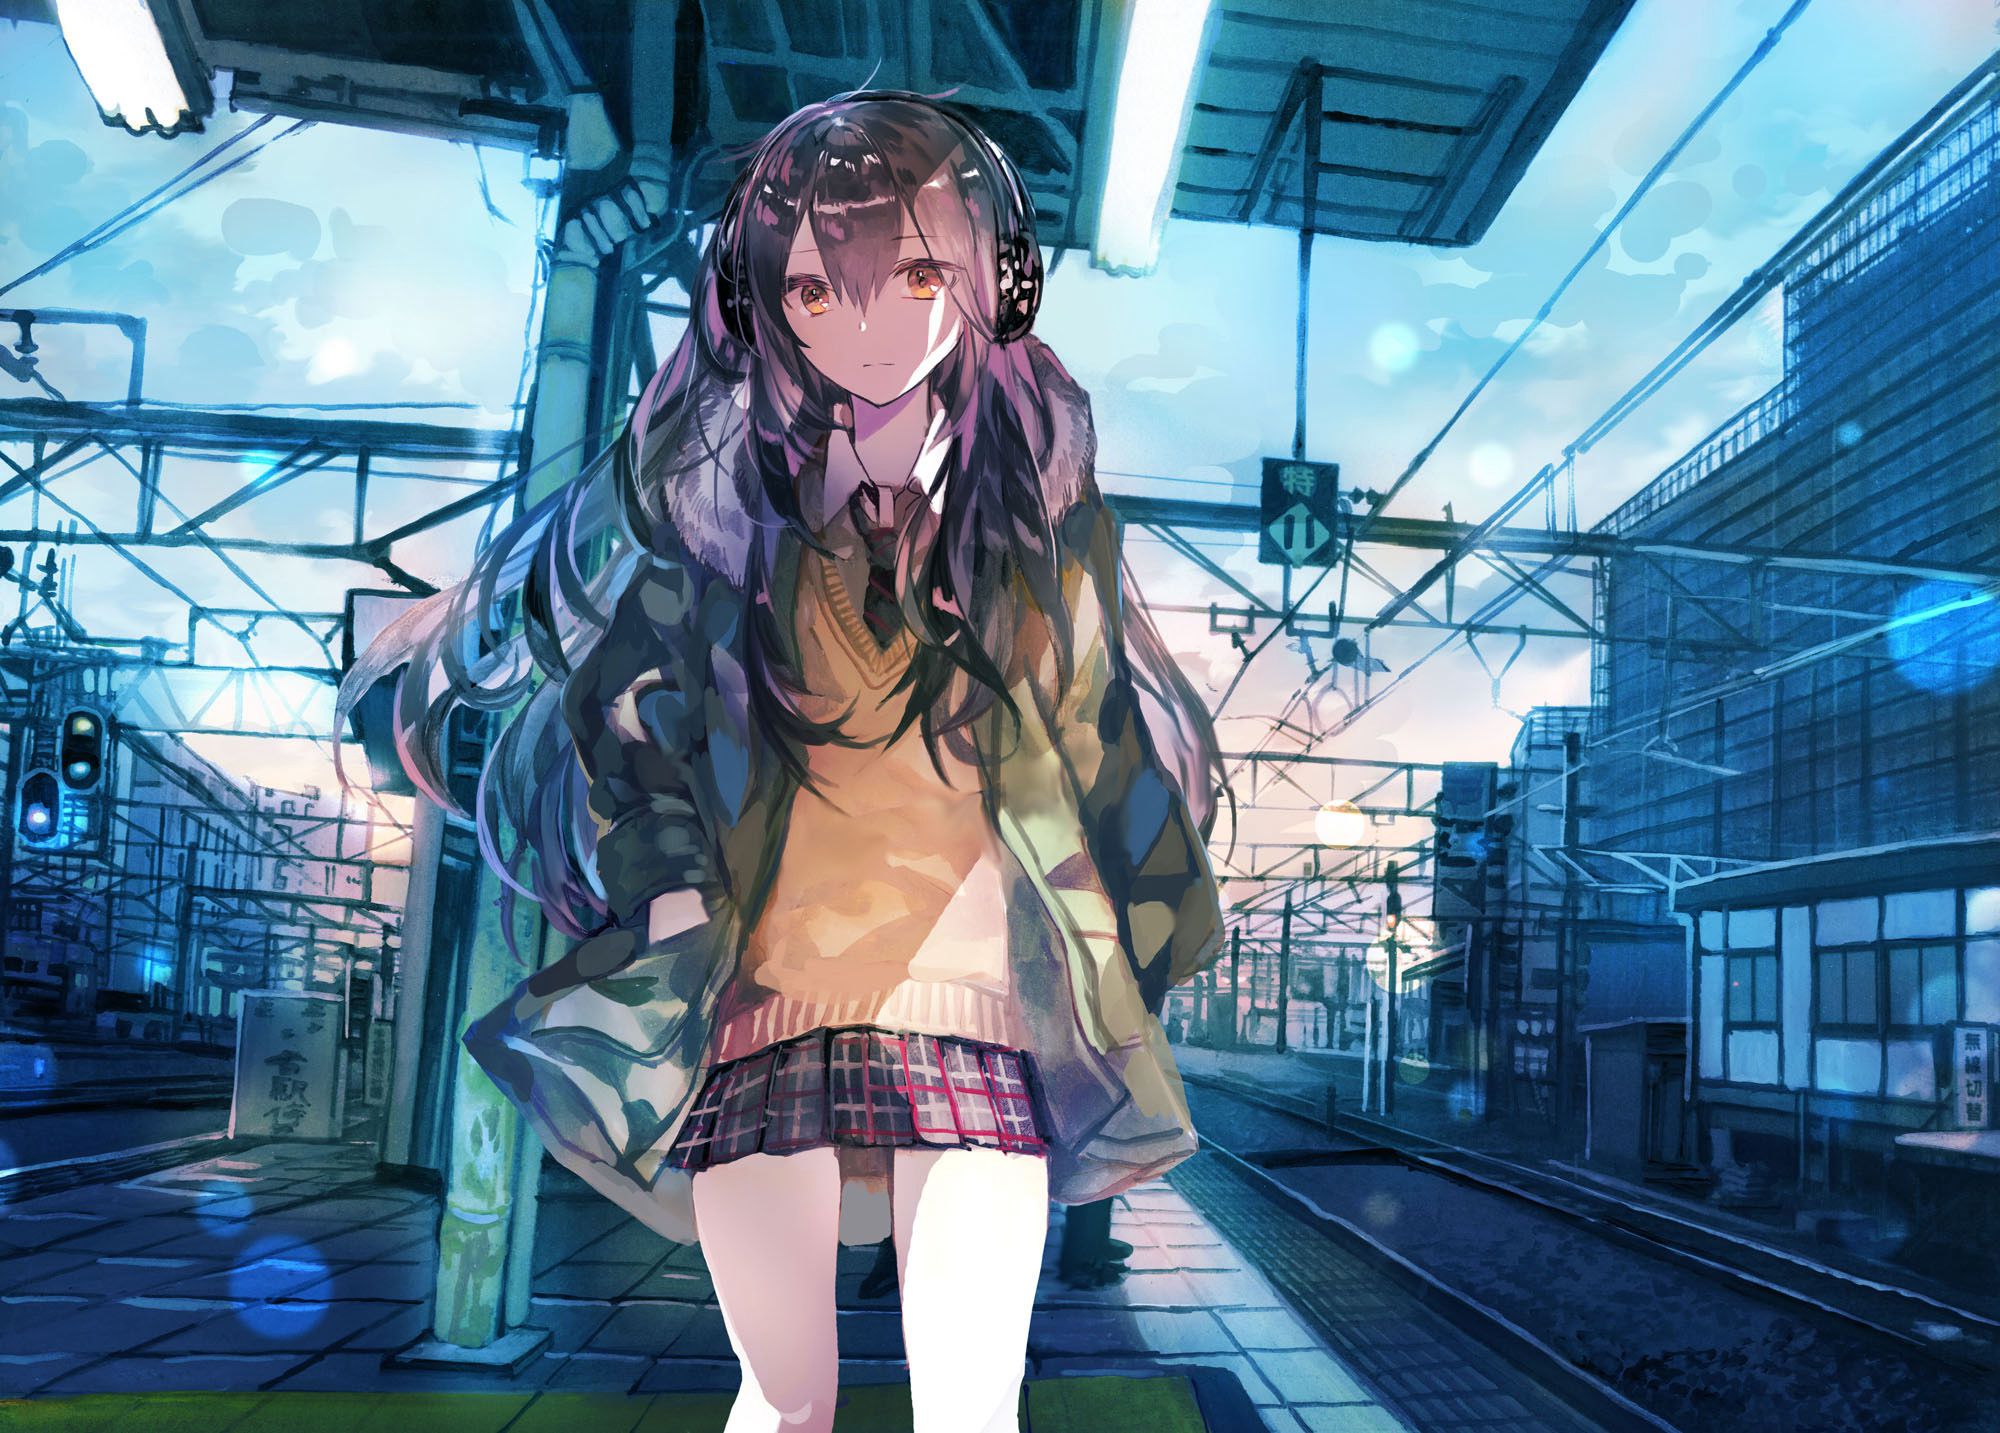 来来往往不停歇，列车抵达或出发月台上的二次元动漫学生制服少女高清图片组图1